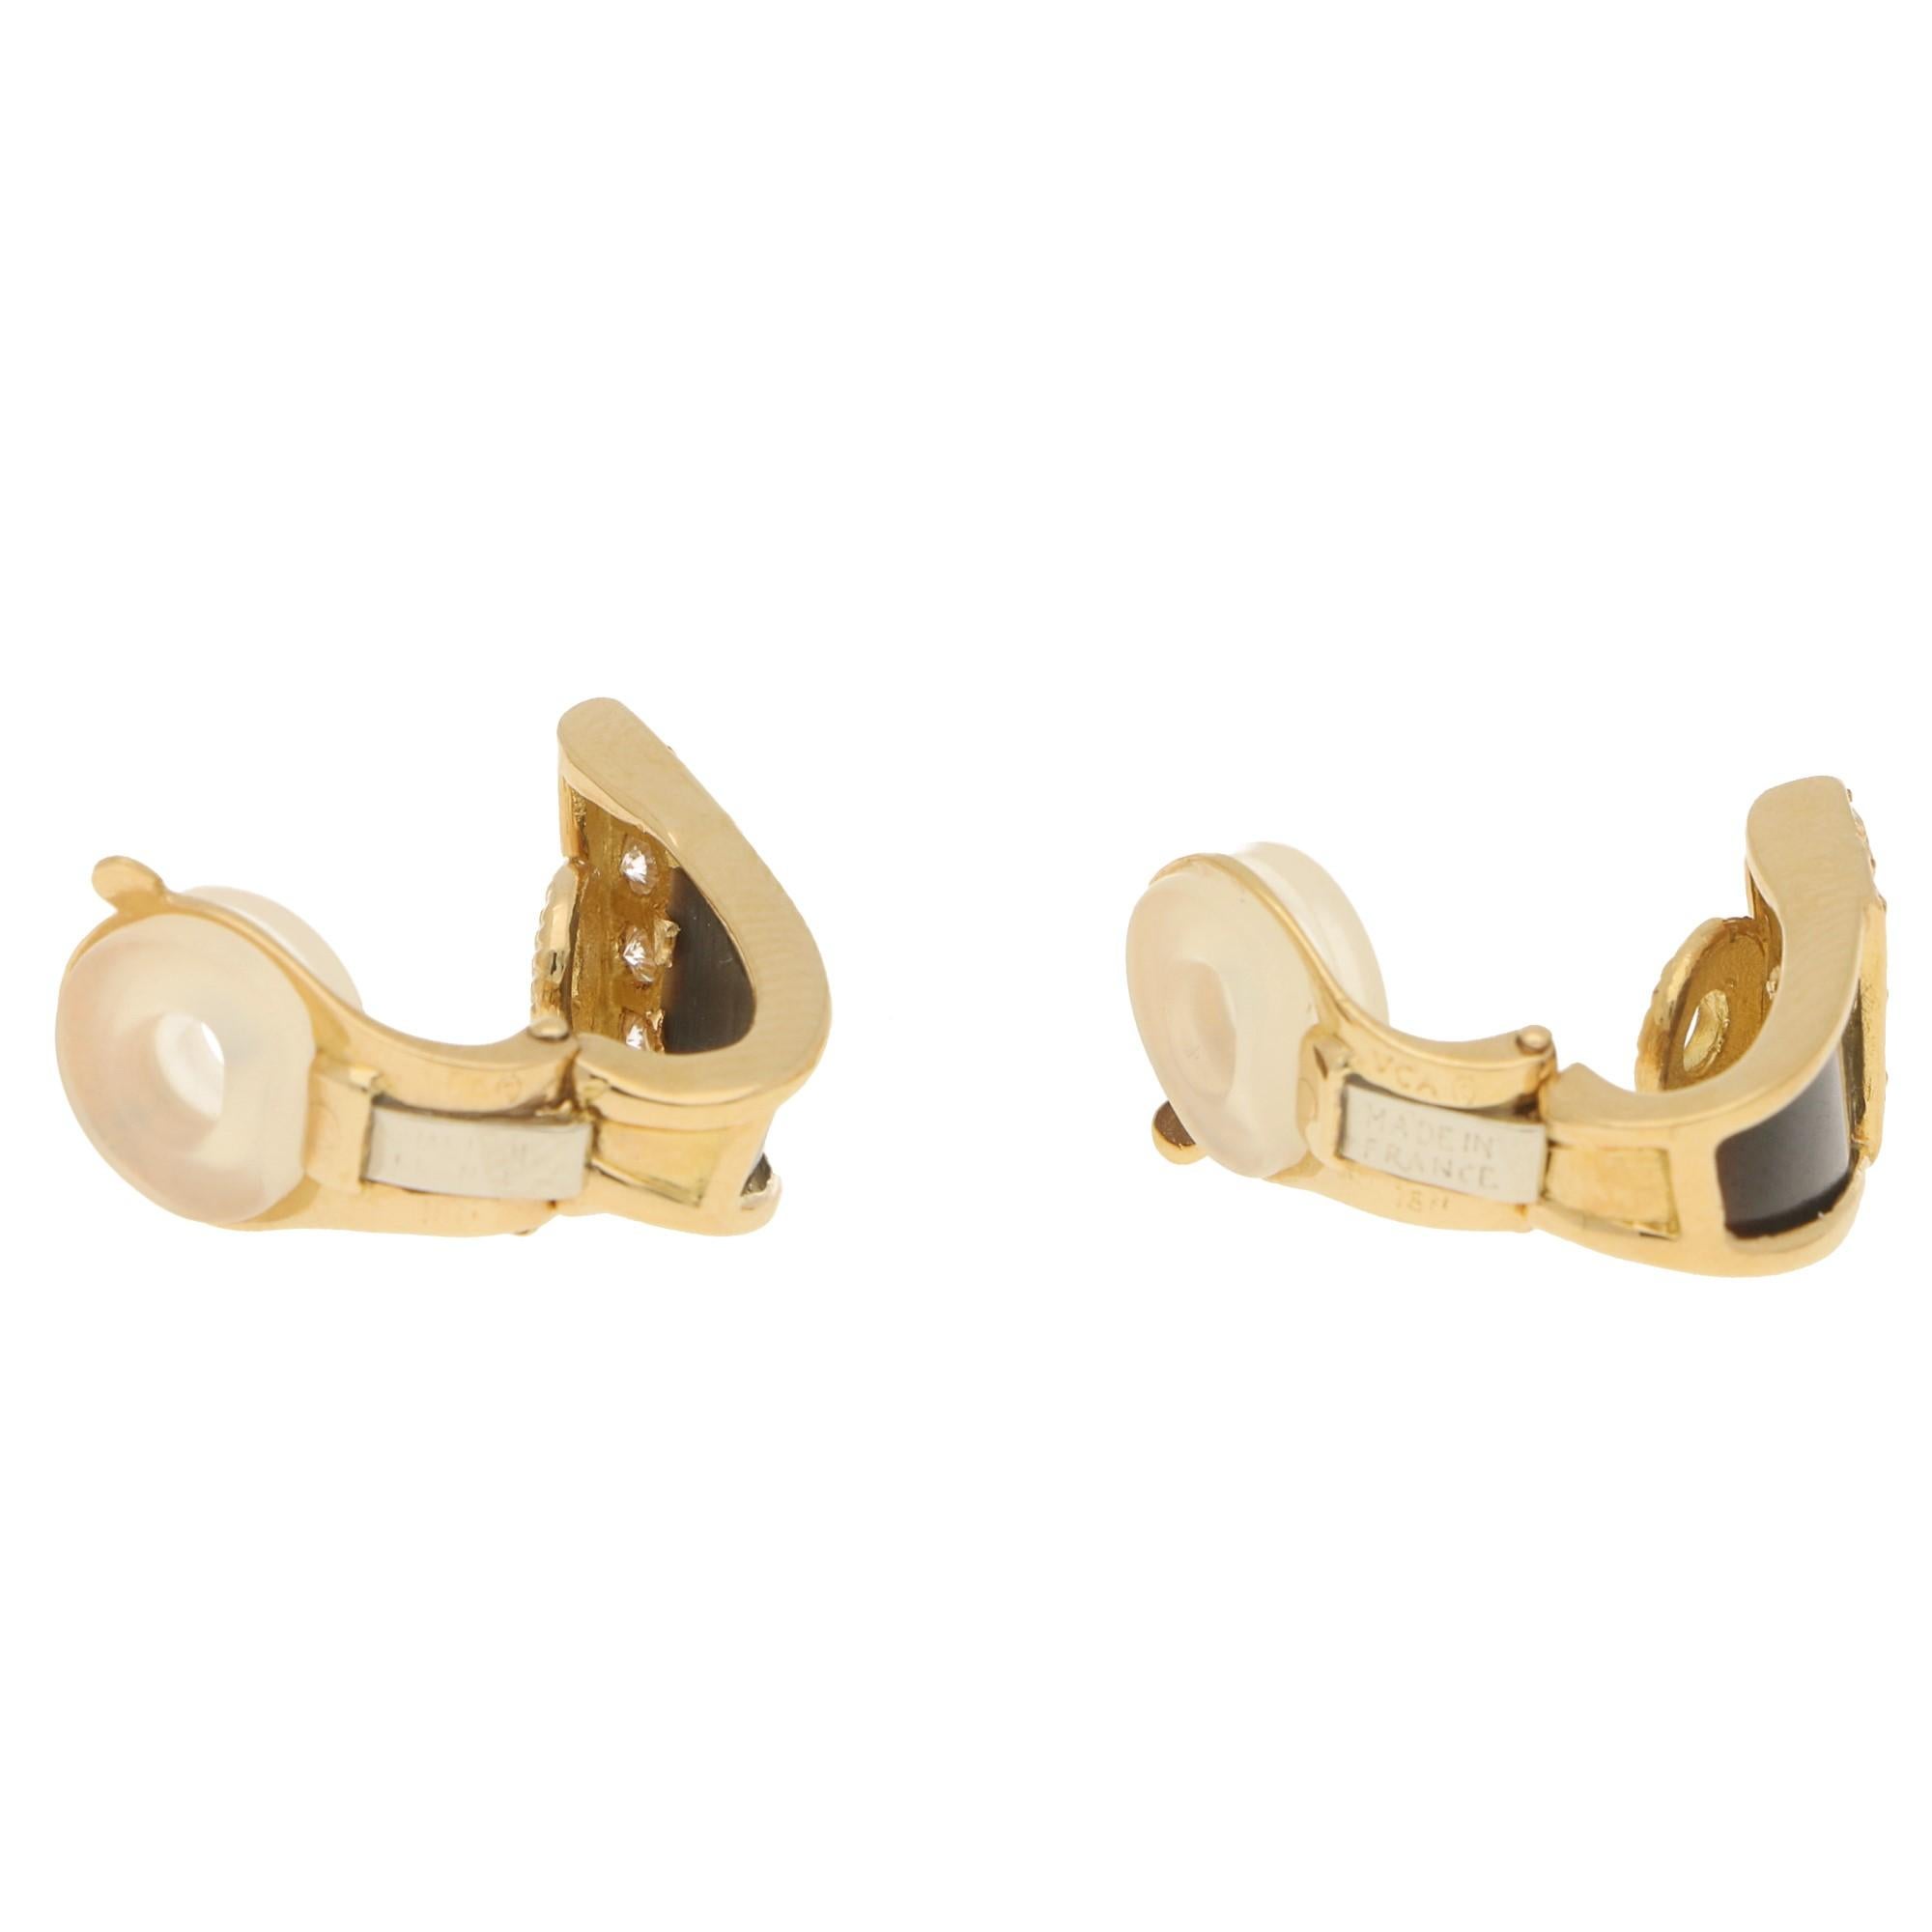 Round Cut Van Cleef & Arpels Black Mother of Pearl and Diamond Studs Earrings in 18 Karat